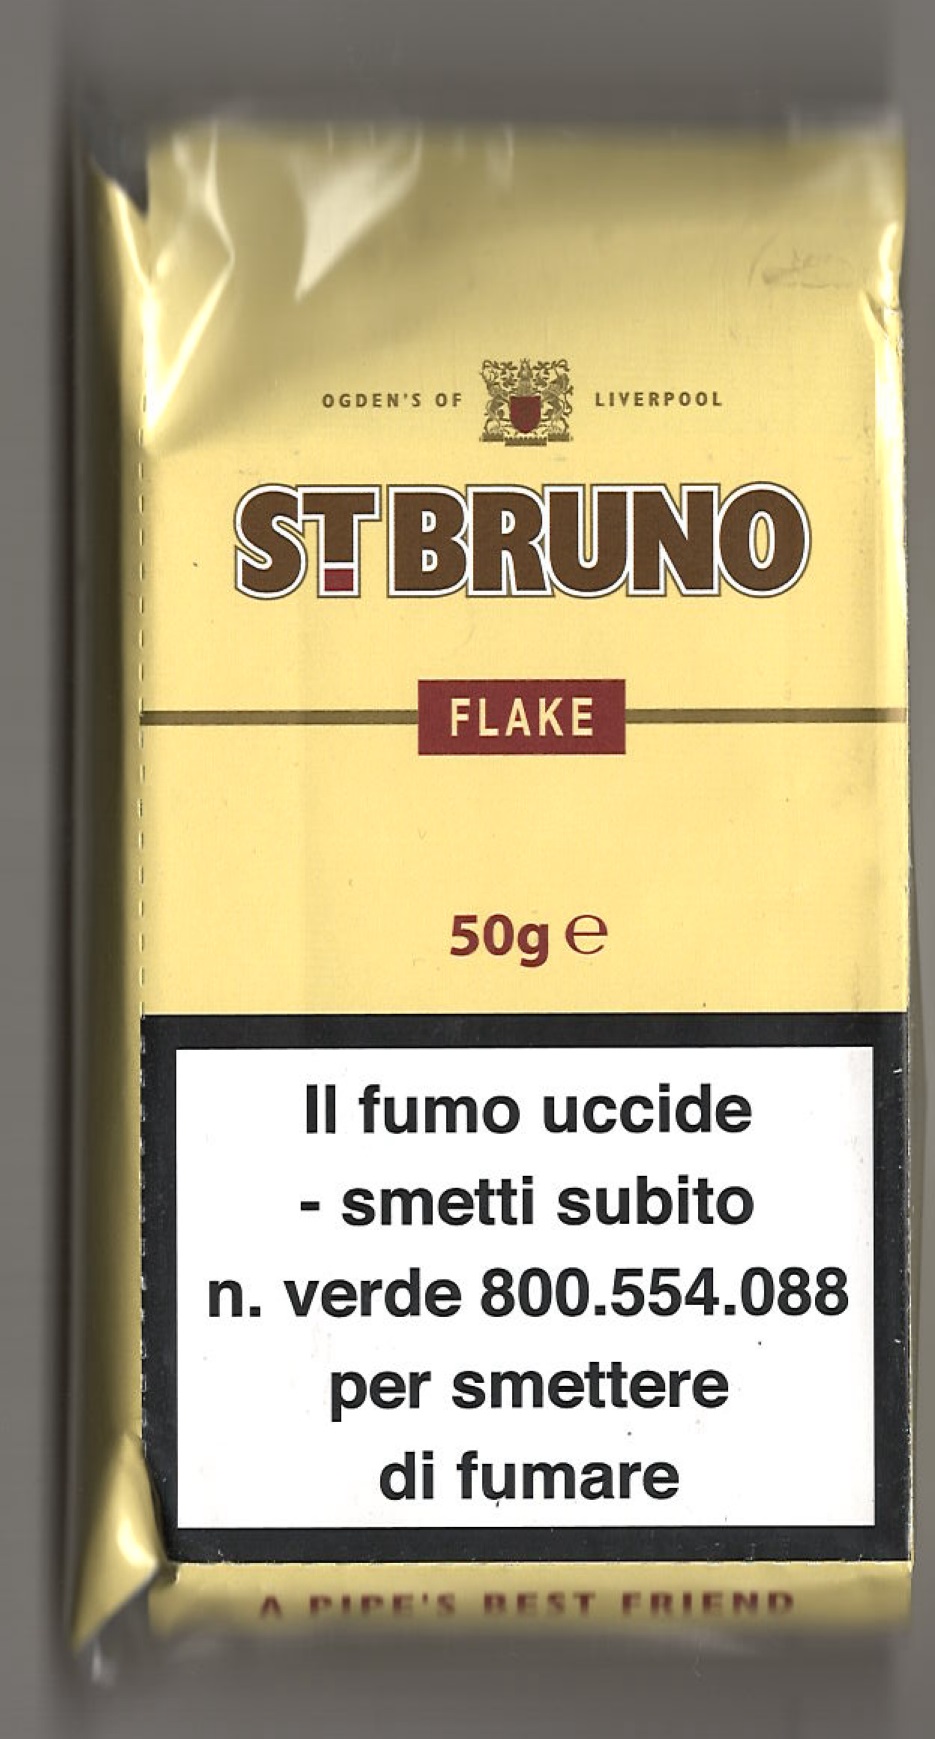 ST. BRUNO FLAKE